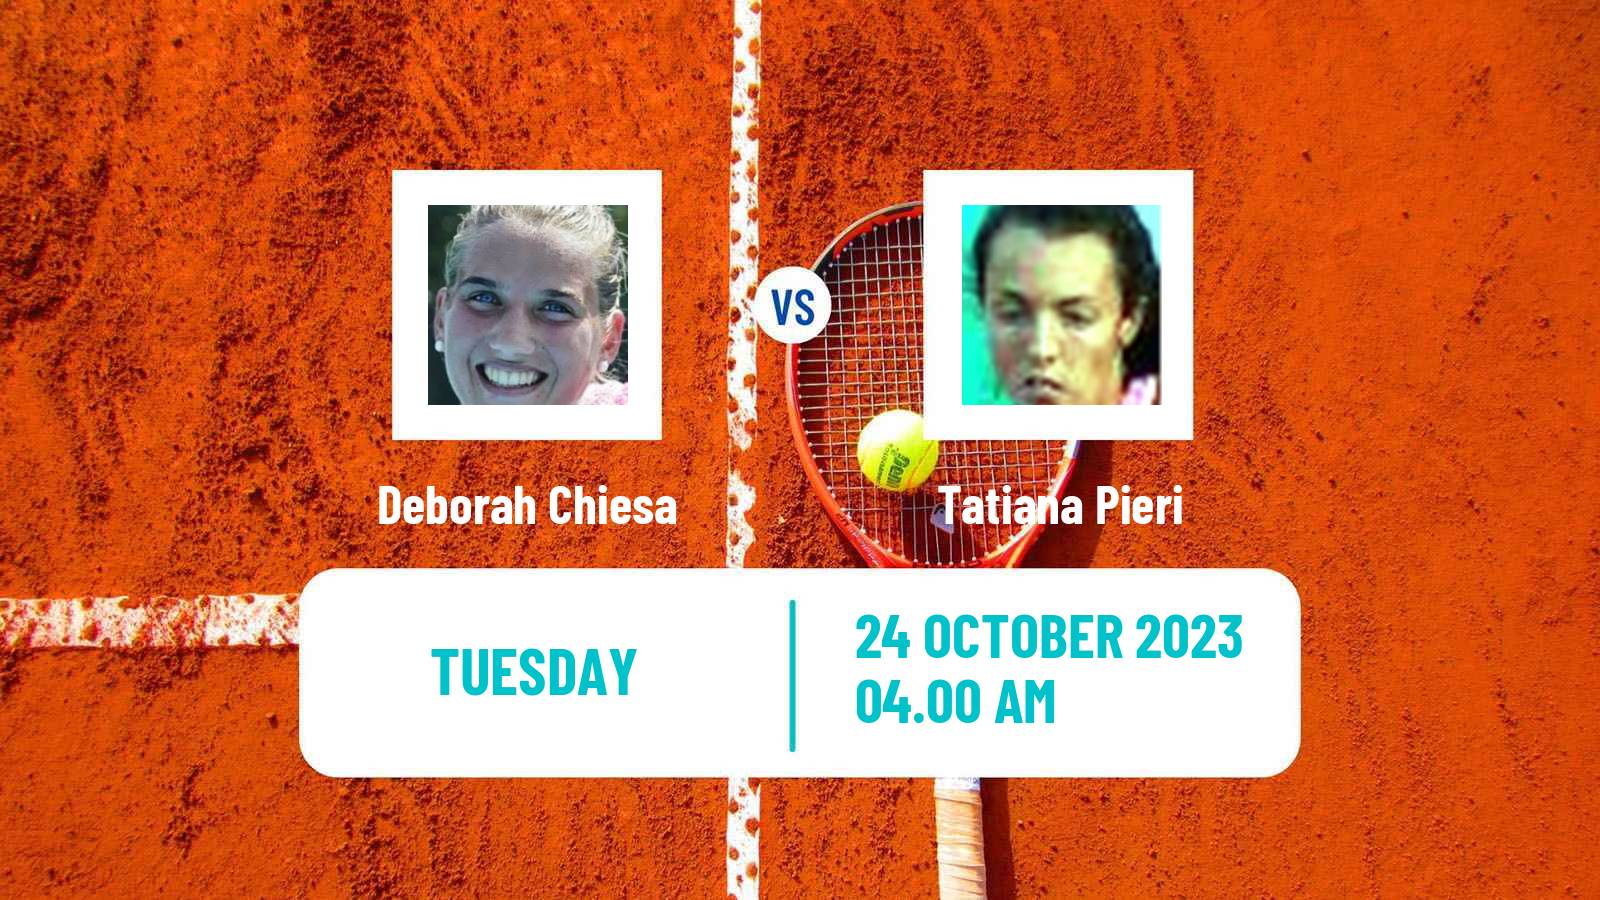 Tennis ITF W25 Santa Margherita Di Pula 12 Women 2023 Deborah Chiesa - Tatiana Pieri